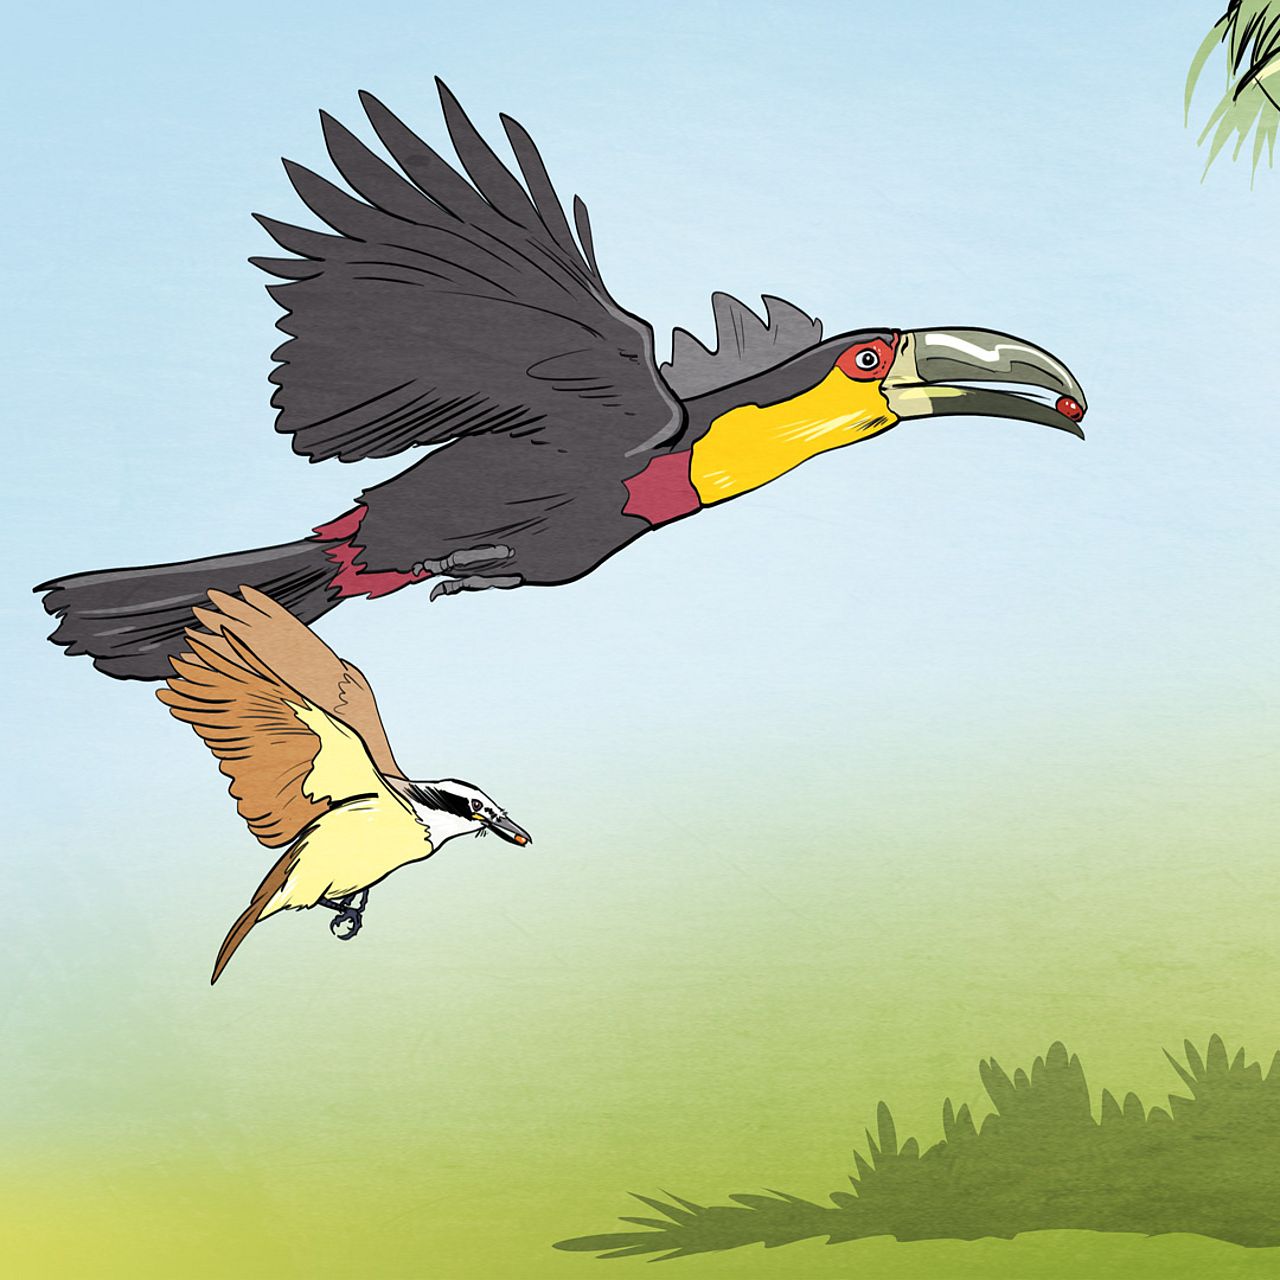 Grafik mit Tukan und kleinem Vogel - der Tukan und die Jussara-Palme, eine Geschichte über Biodiversität und den Klimawandel